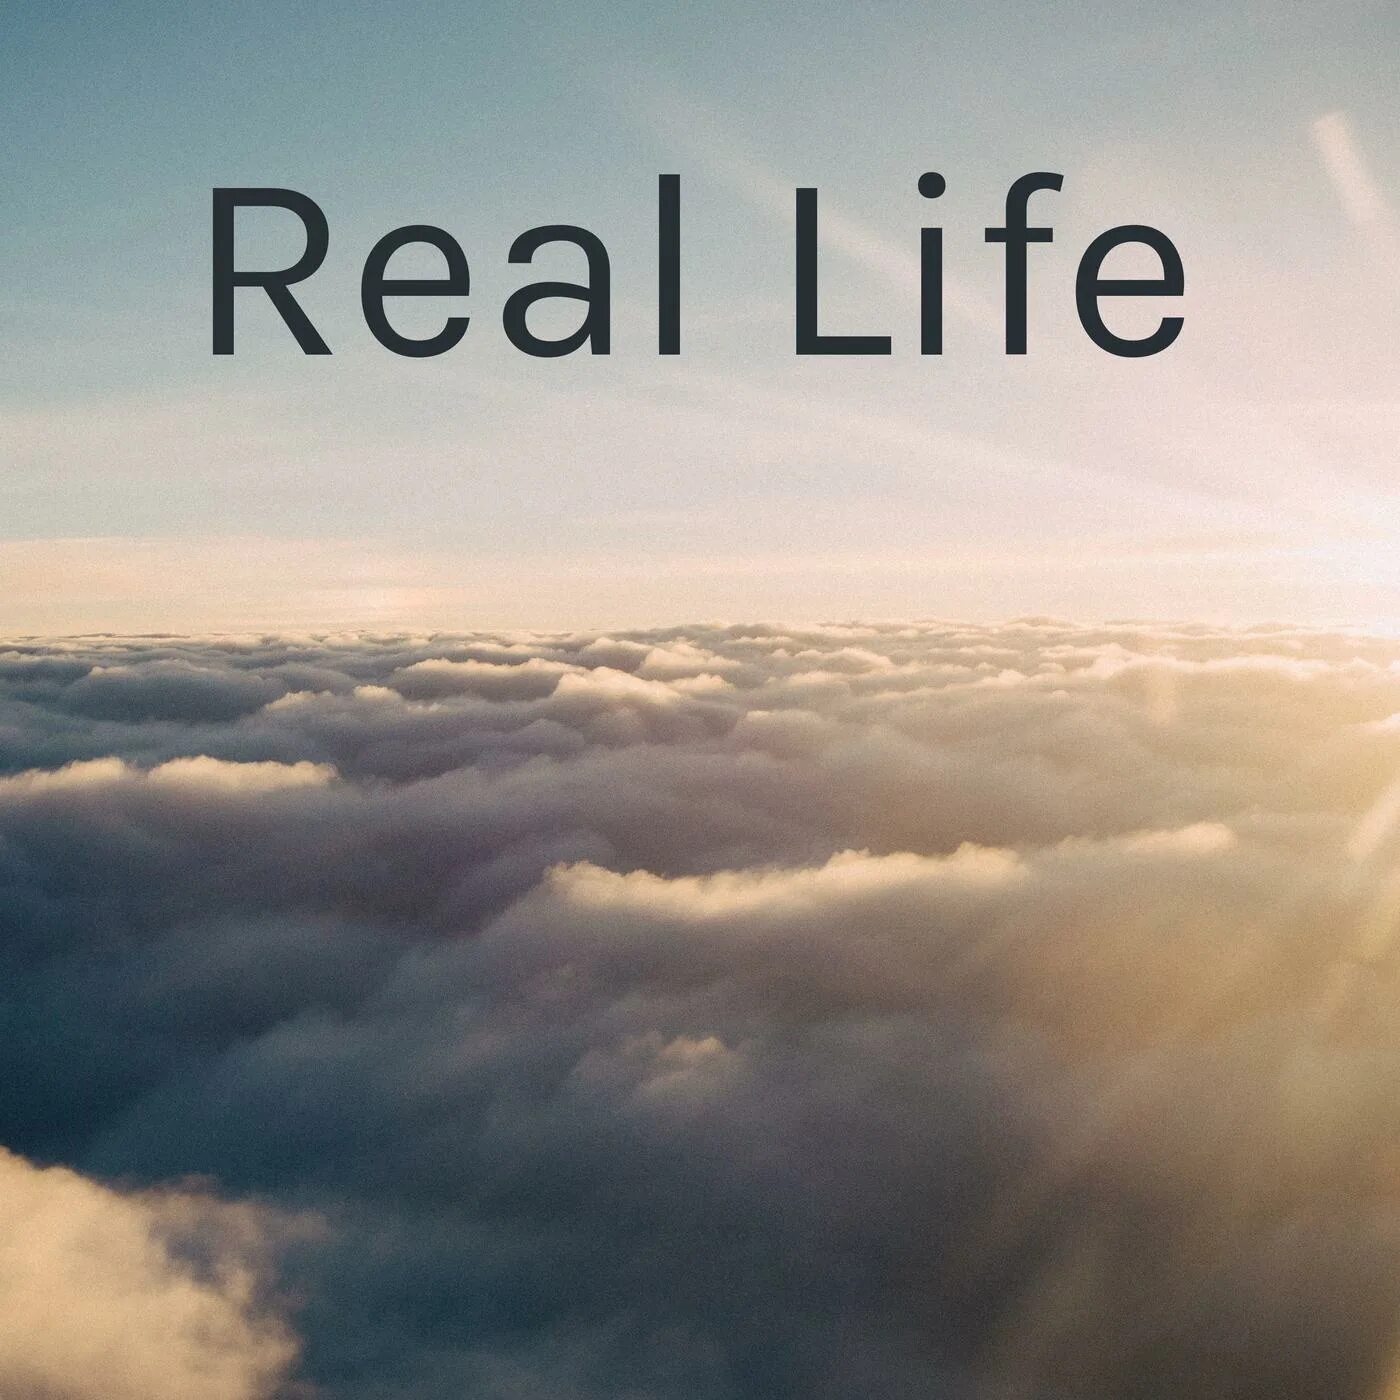 Real life андроид. Real Life. Real Life надпись. Real Life картинка. Авы real Life.